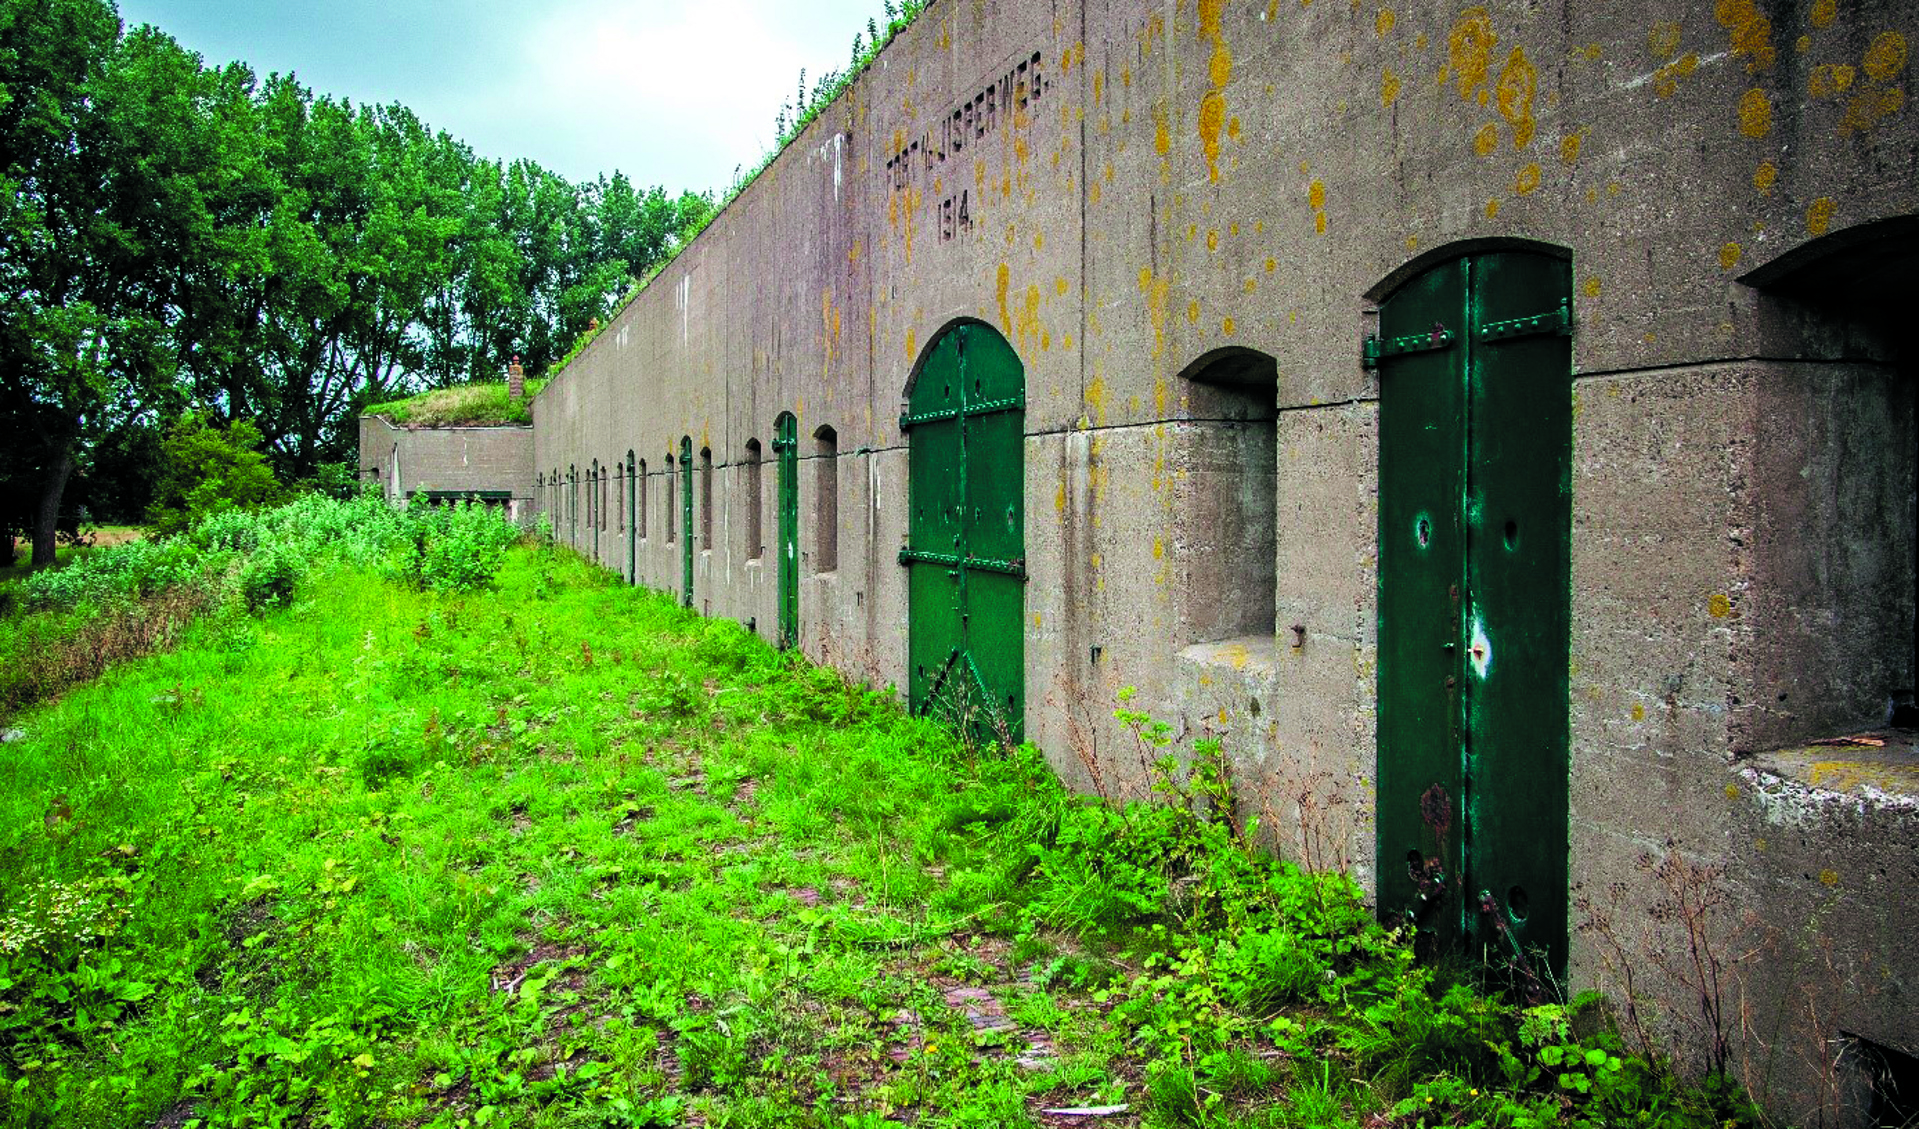 Het doorgaans gesloten fort aan de Jisperweg is zondag 24 juni open voor publiek. (Foto: aangeleverd)